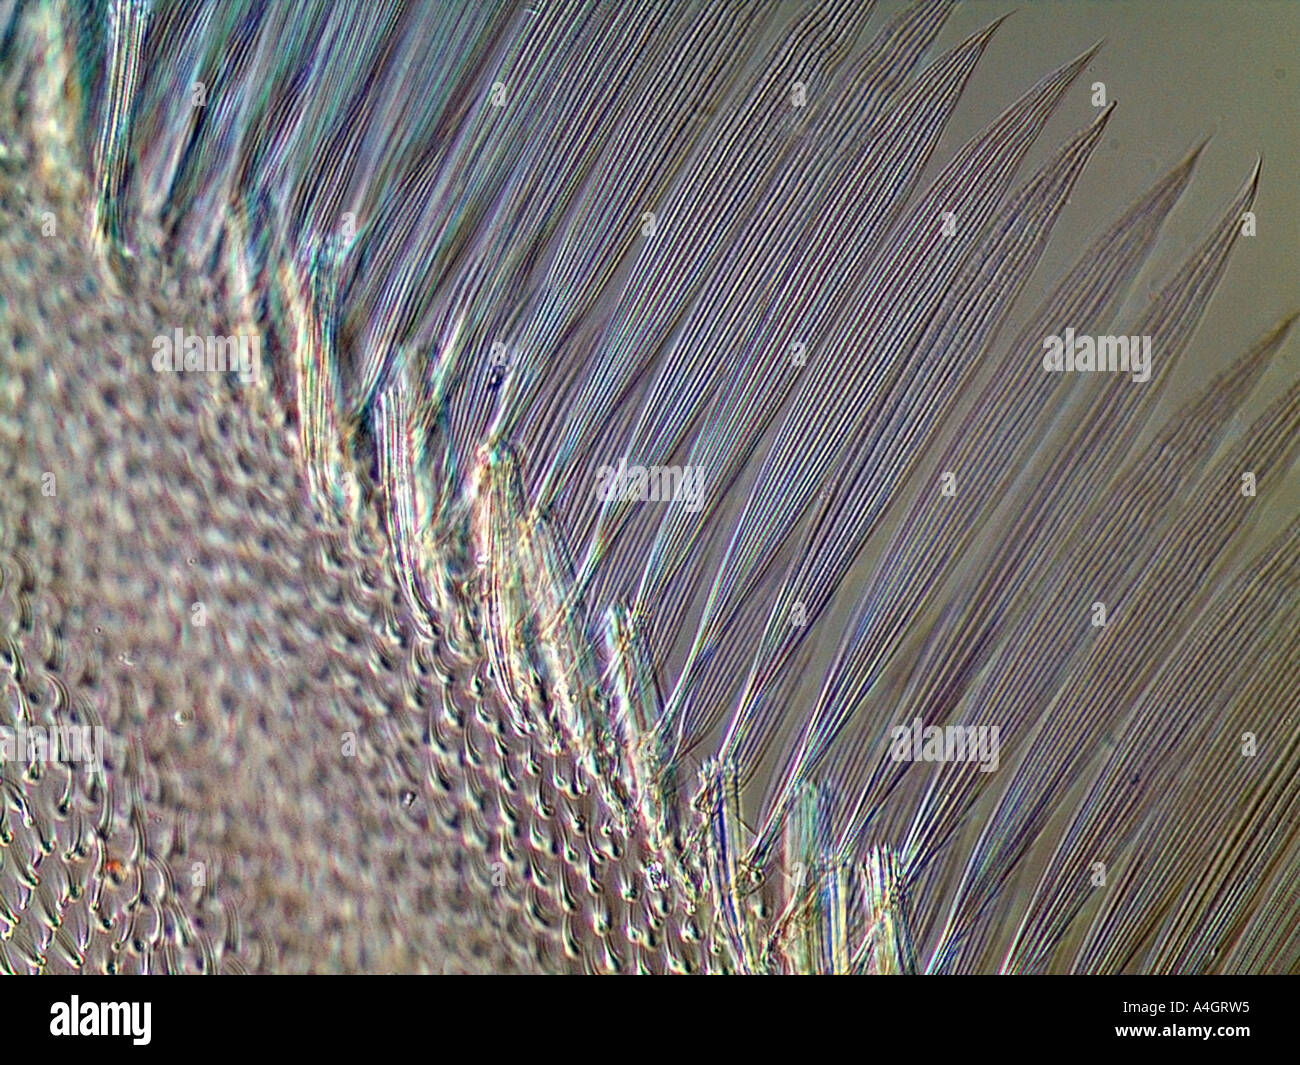 Details zu den Rand der Flügel einer Fliege, differential Interferenz Kontrast Beleuchtung Stockfoto